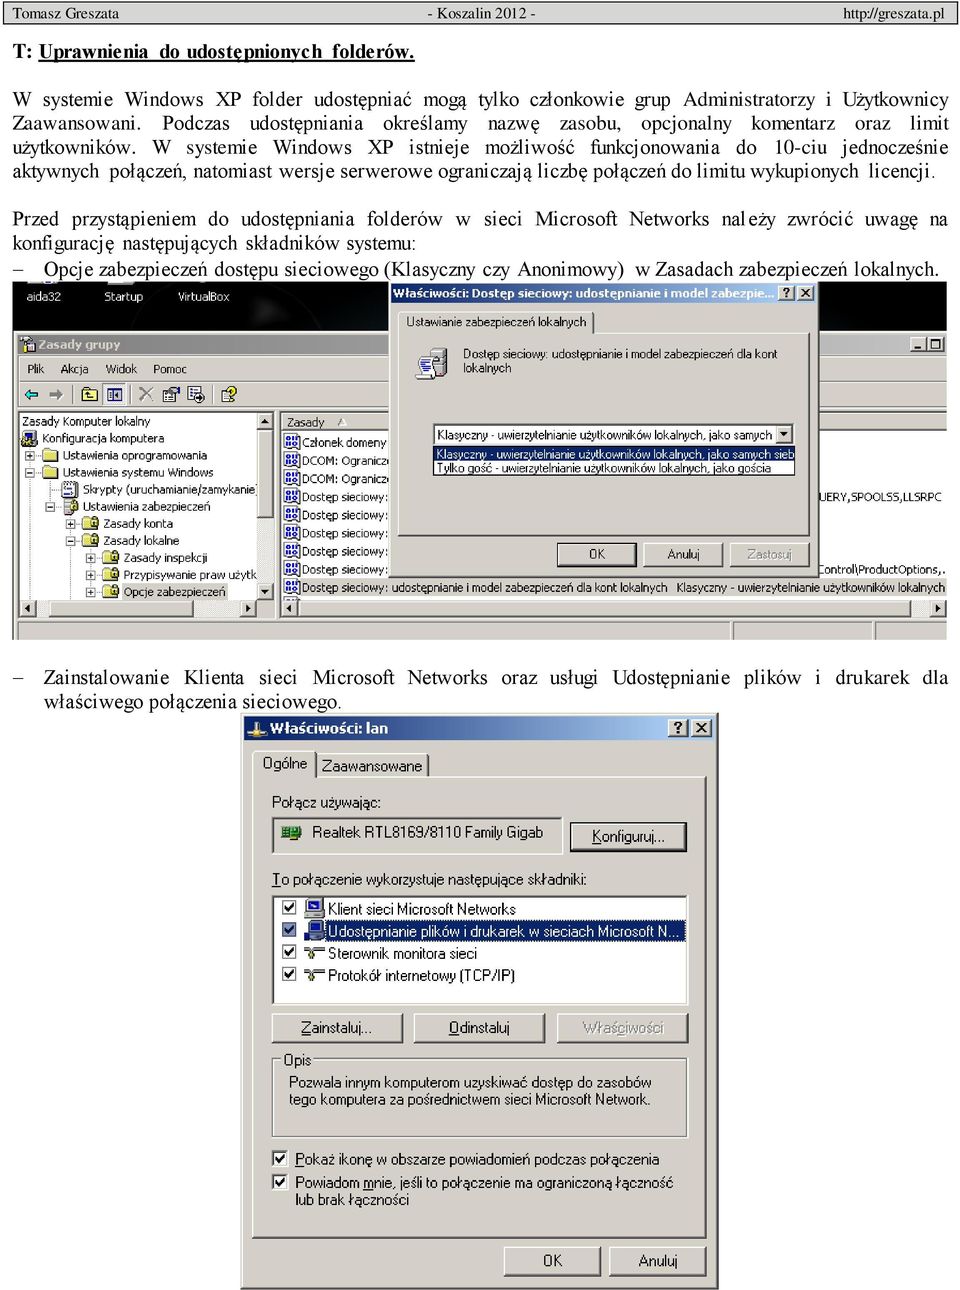 W systemie Windows XP istnieje możliwość funkcjonowania do 10-ciu jednocześnie aktywnych połączeń, natomiast wersje serwerowe ograniczają liczbę połączeń do limitu wykupionych licencji.